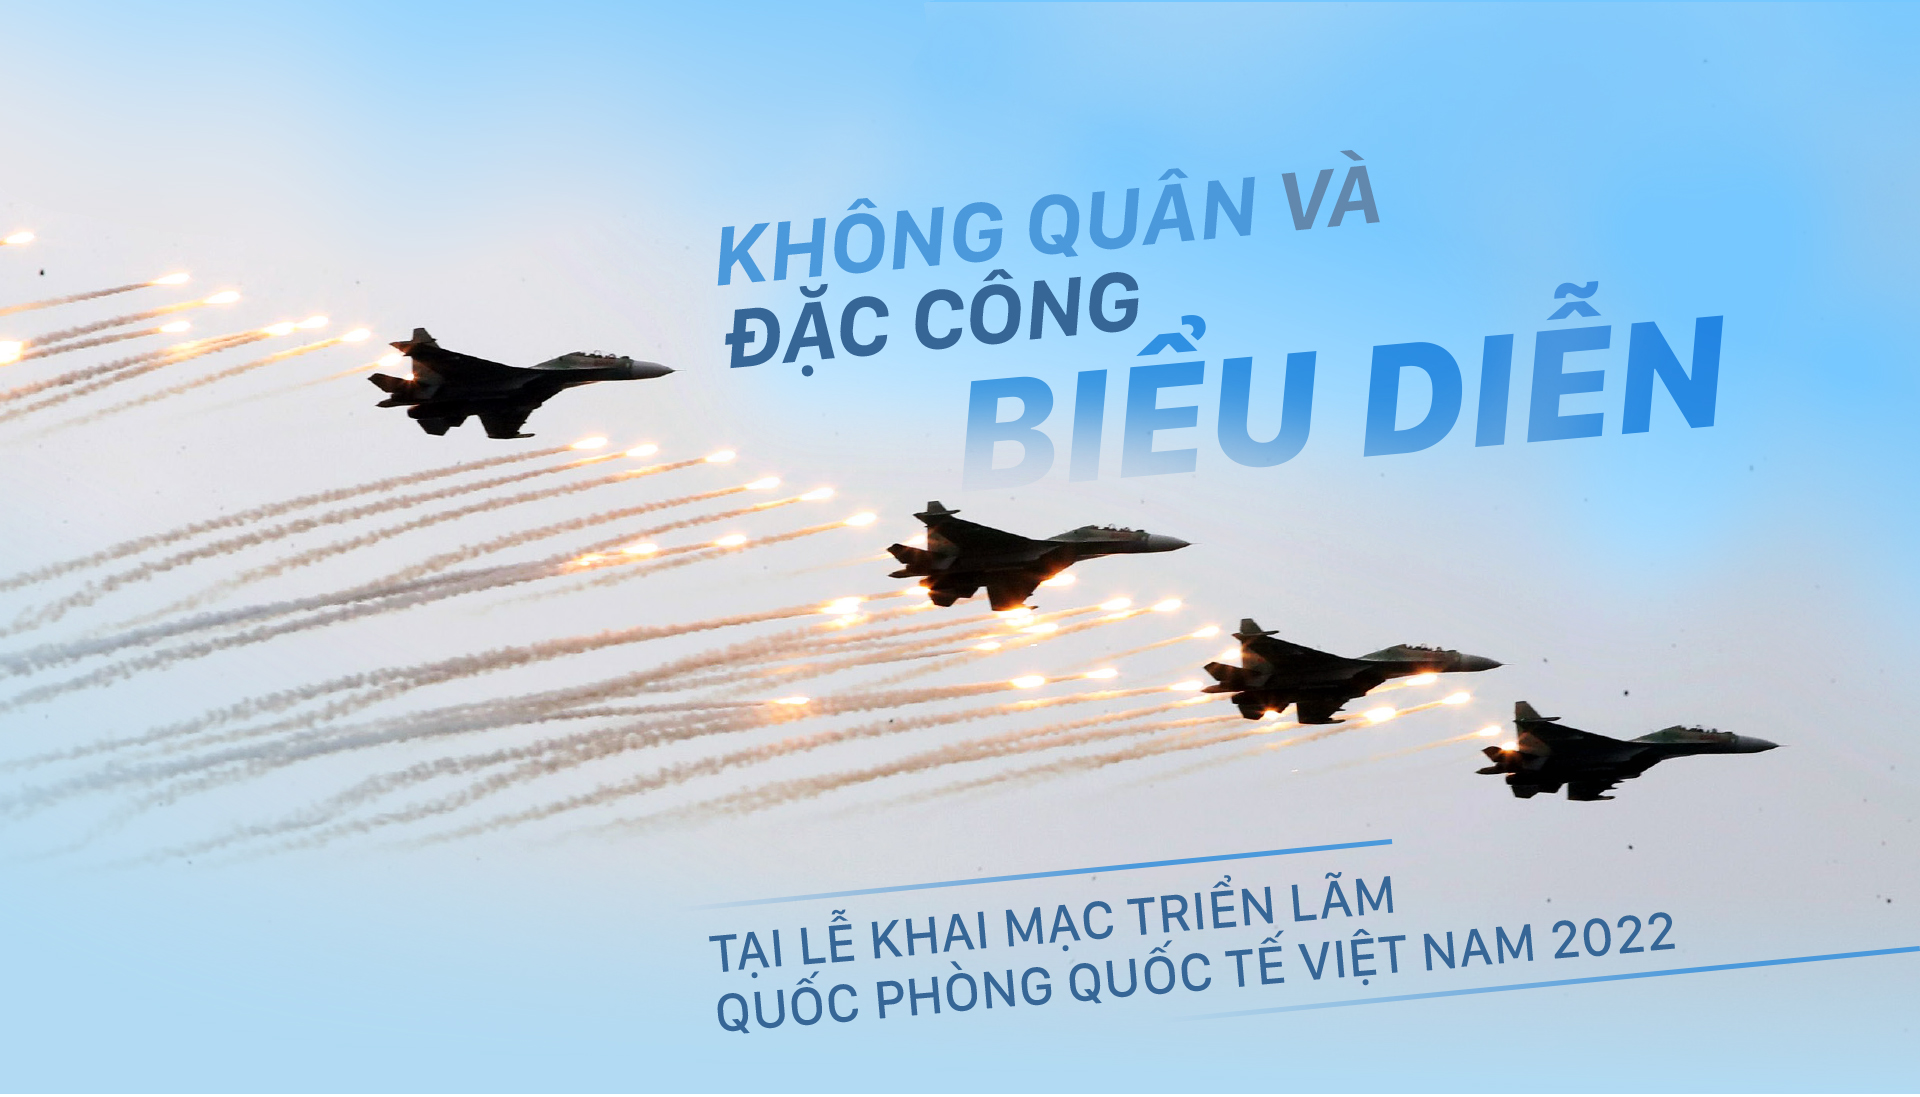 Không quân và đặc công biểu diễn tại lễ khai mạc Triển lãm Quốc phòng quốc tế Việt Nam 2022